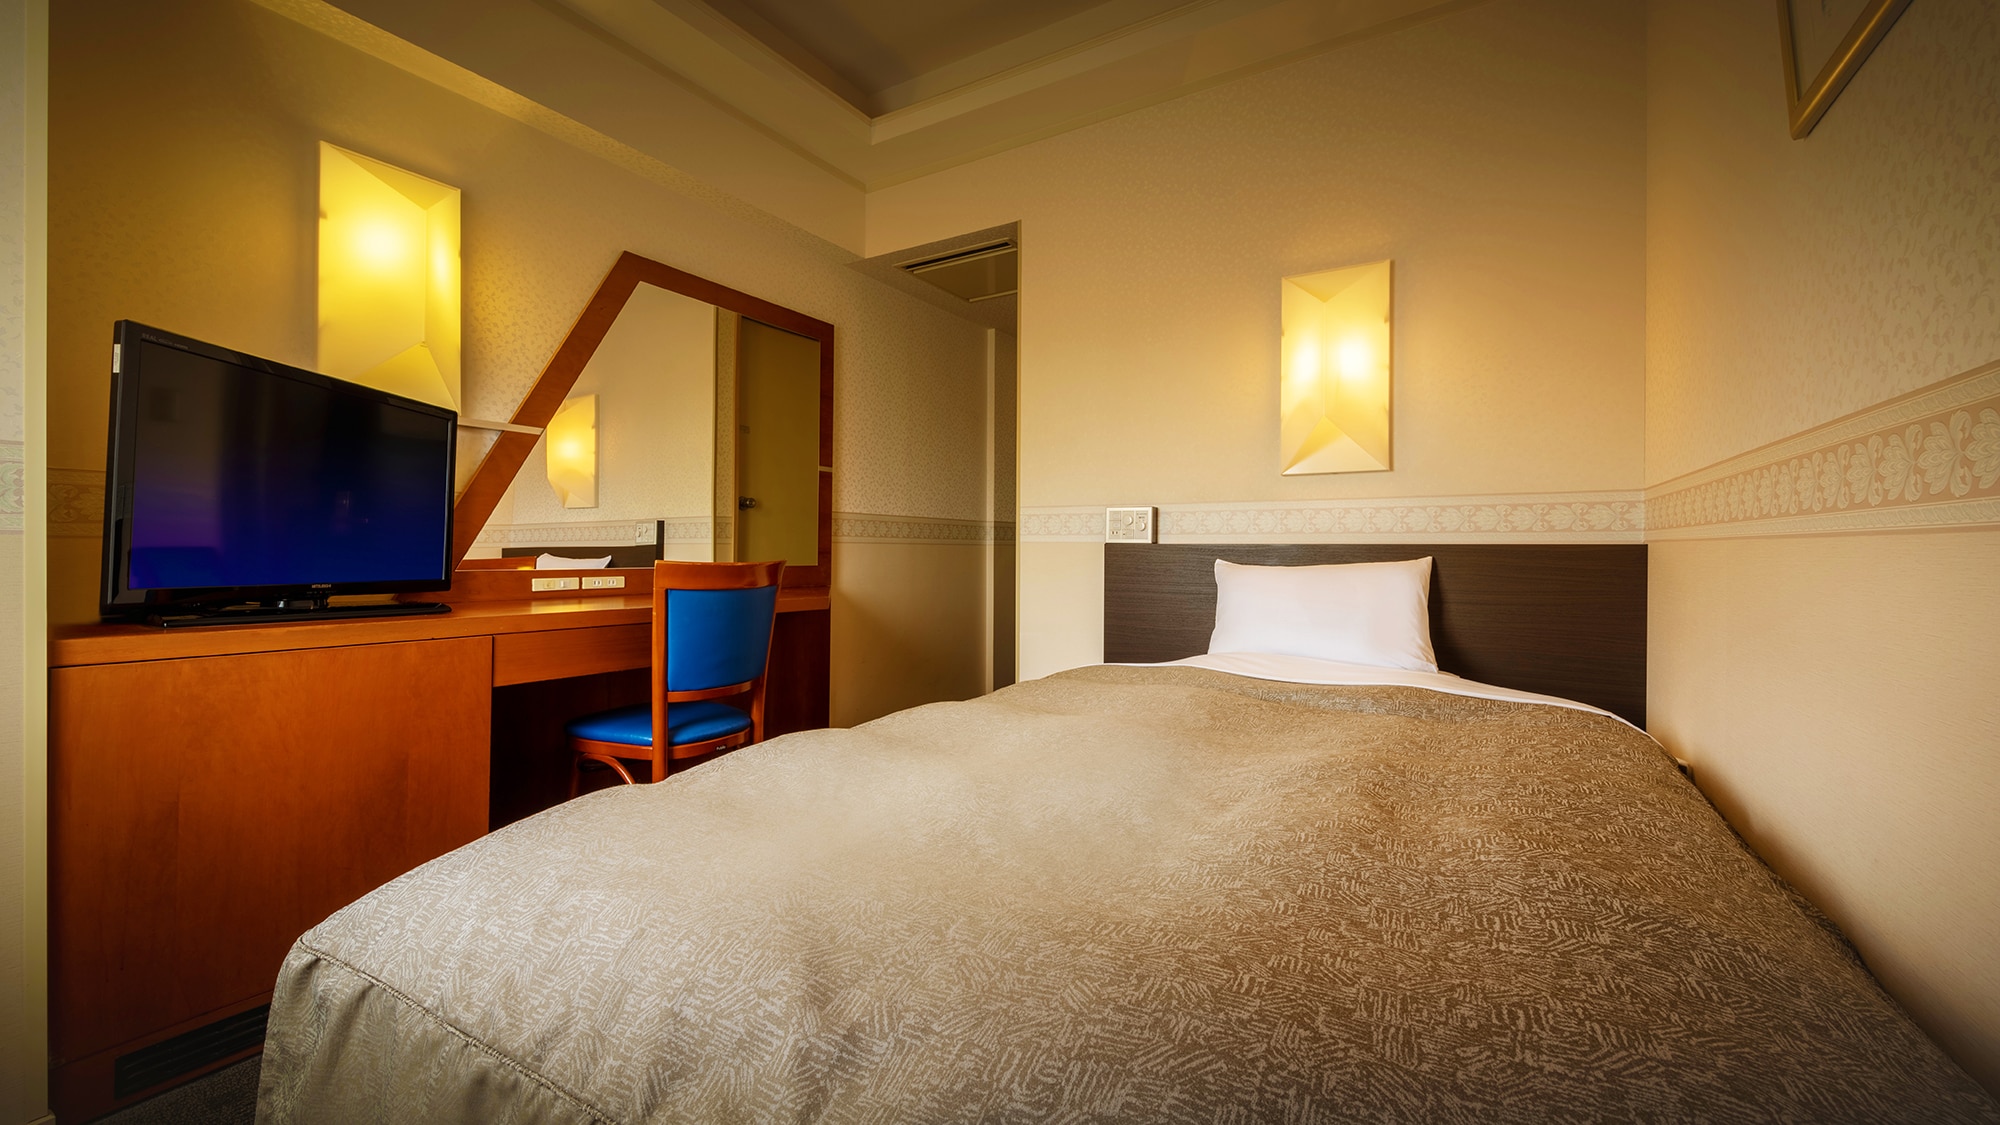 【별관/컴포트·세미 더블】 비즈니스에도 관광에도 사용하기 쉬운 넓은 침대의 방.